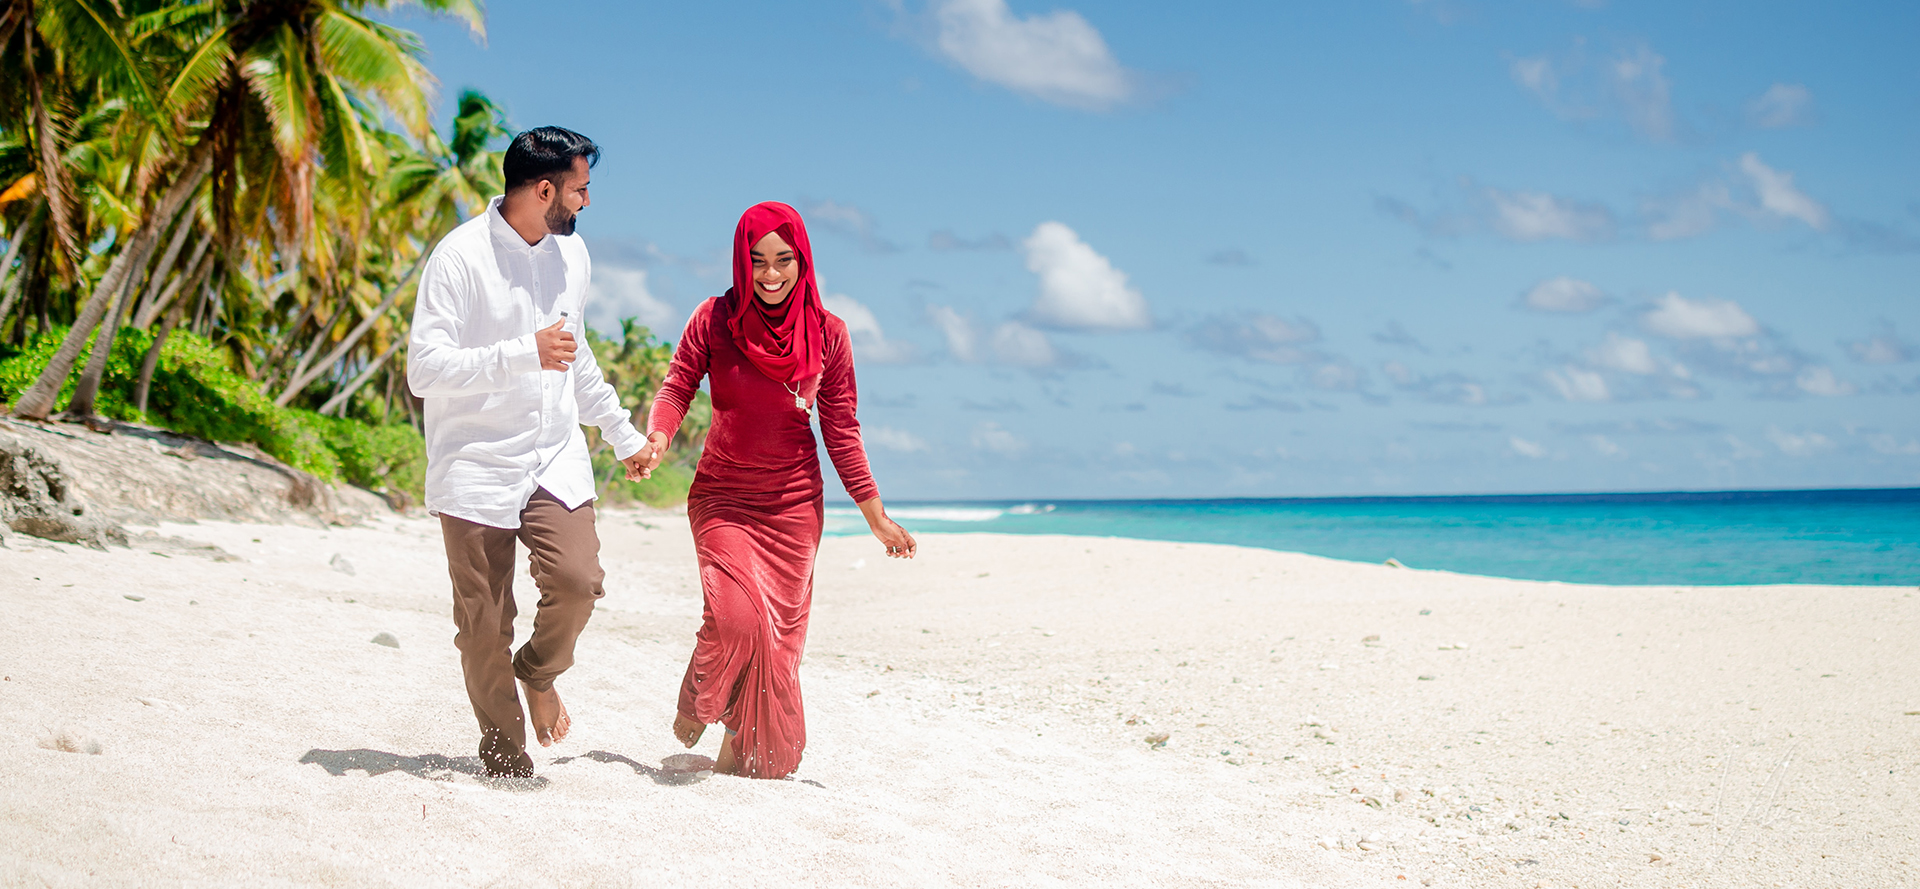 Arabische singles op een date wandelen langs het strand.